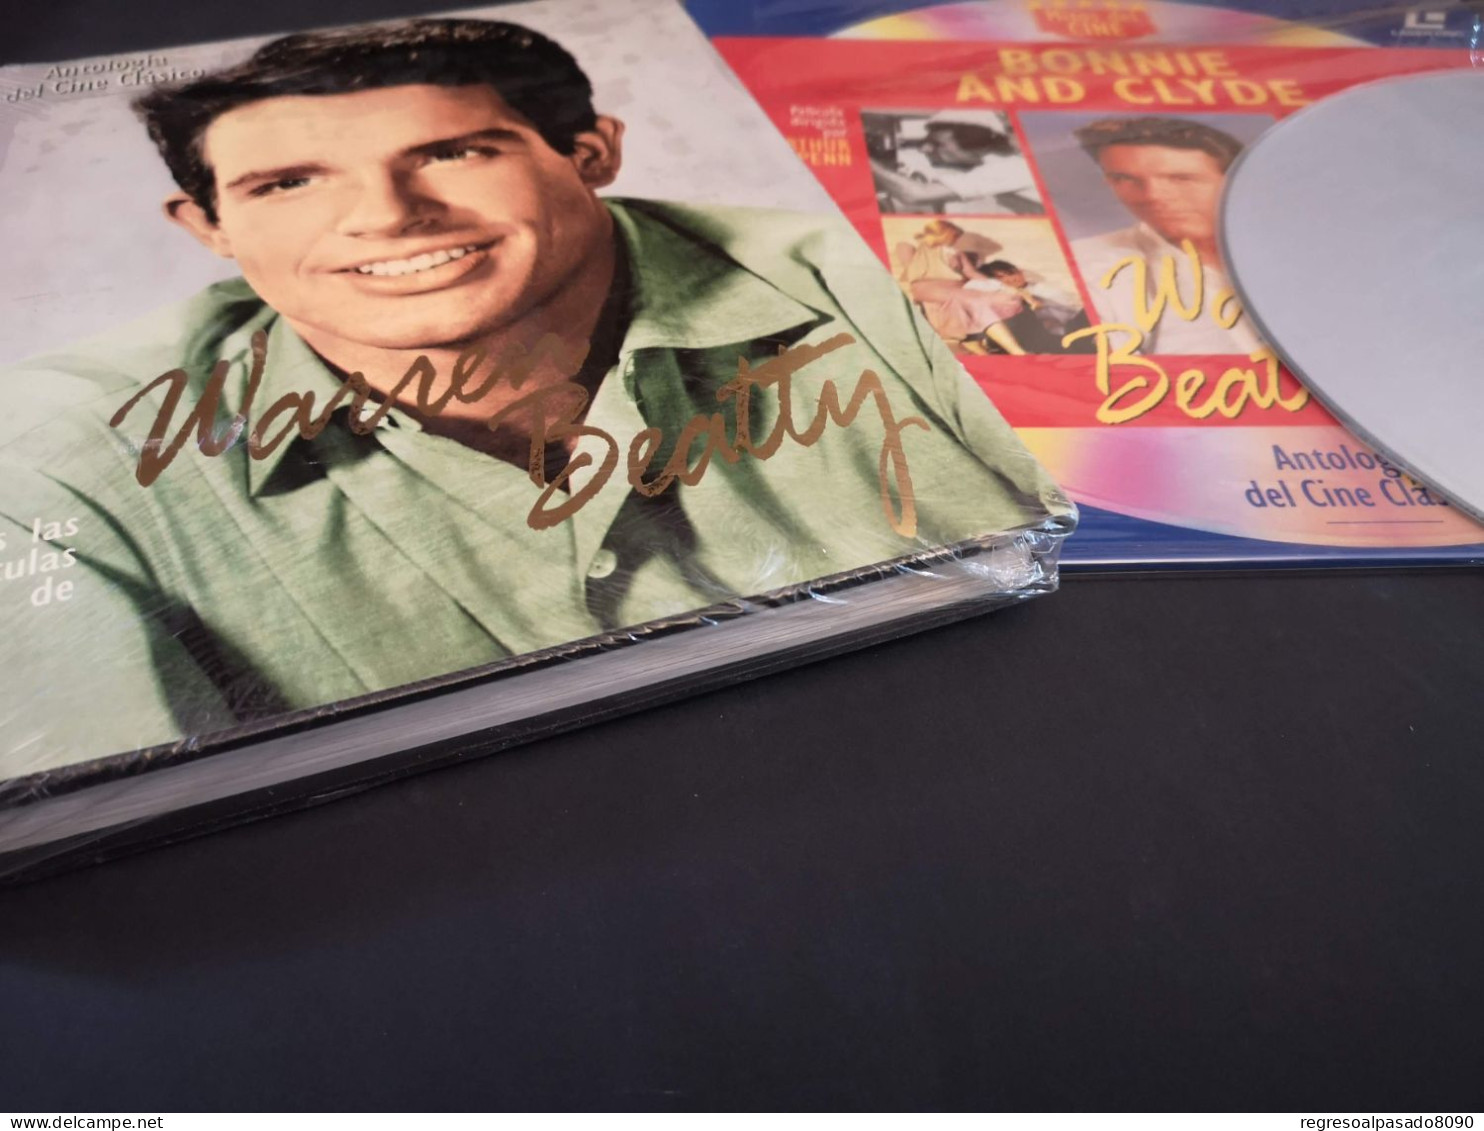 Warren Beatty Libro Y Película Laser Disc Laserdisc Bonnie And Clyde. Colección Mitos Del Cine Planeta Años 90 - Classiques